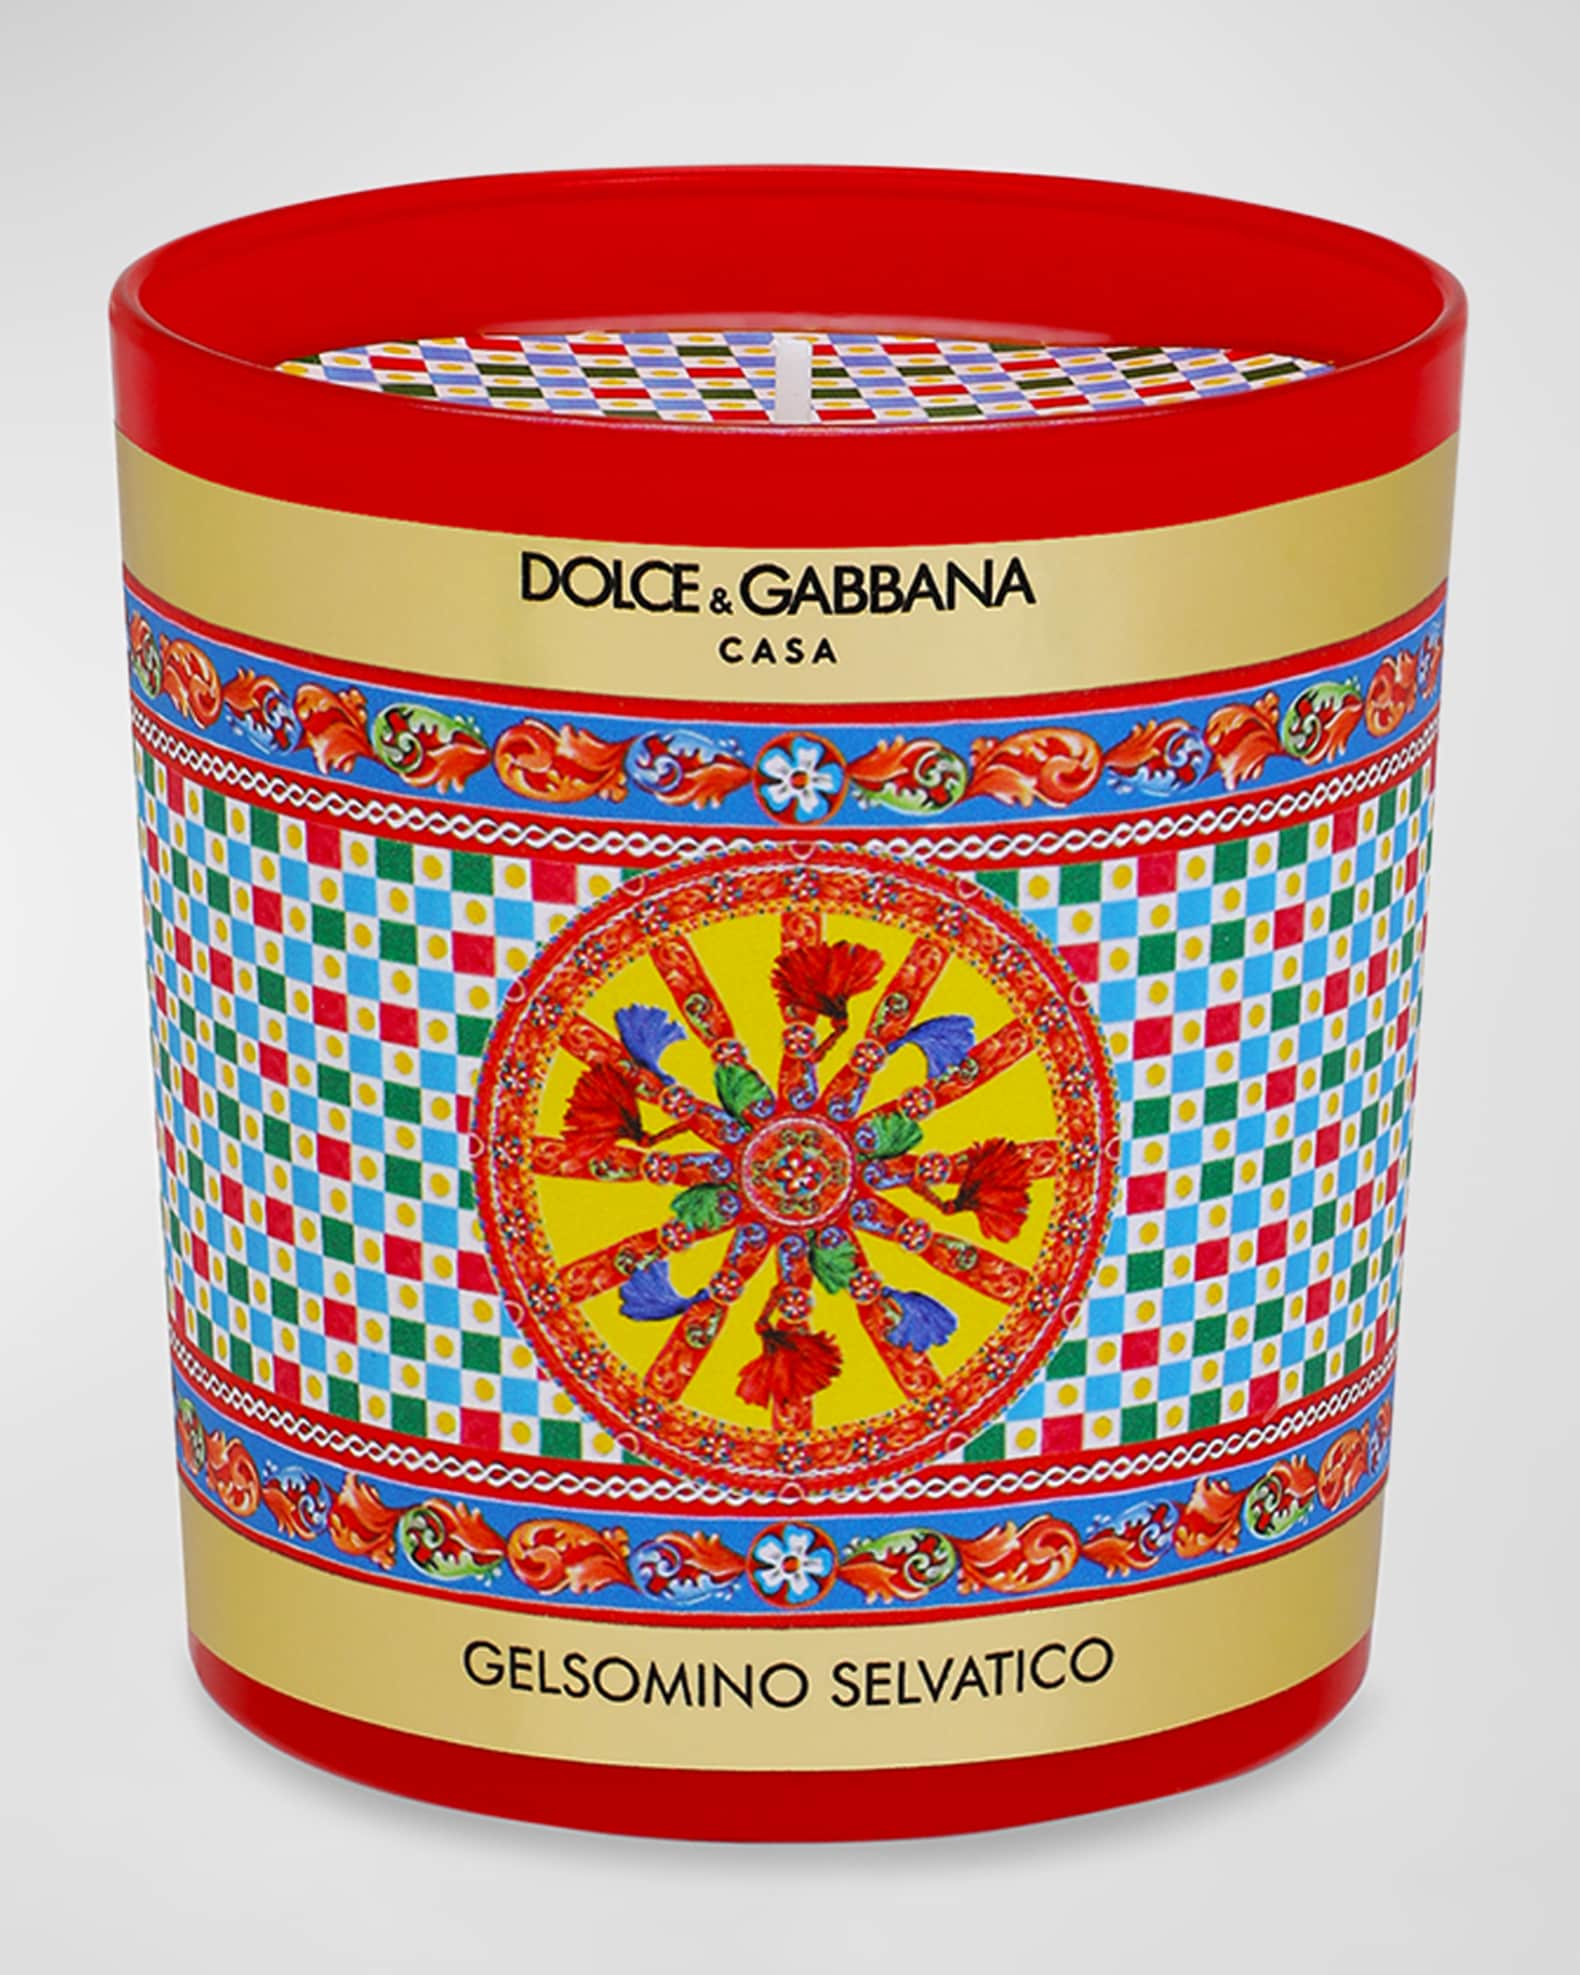 Dolce&Gabbana Casa Carretto Scented Candle, 8.8 oz. | Neiman Marcus